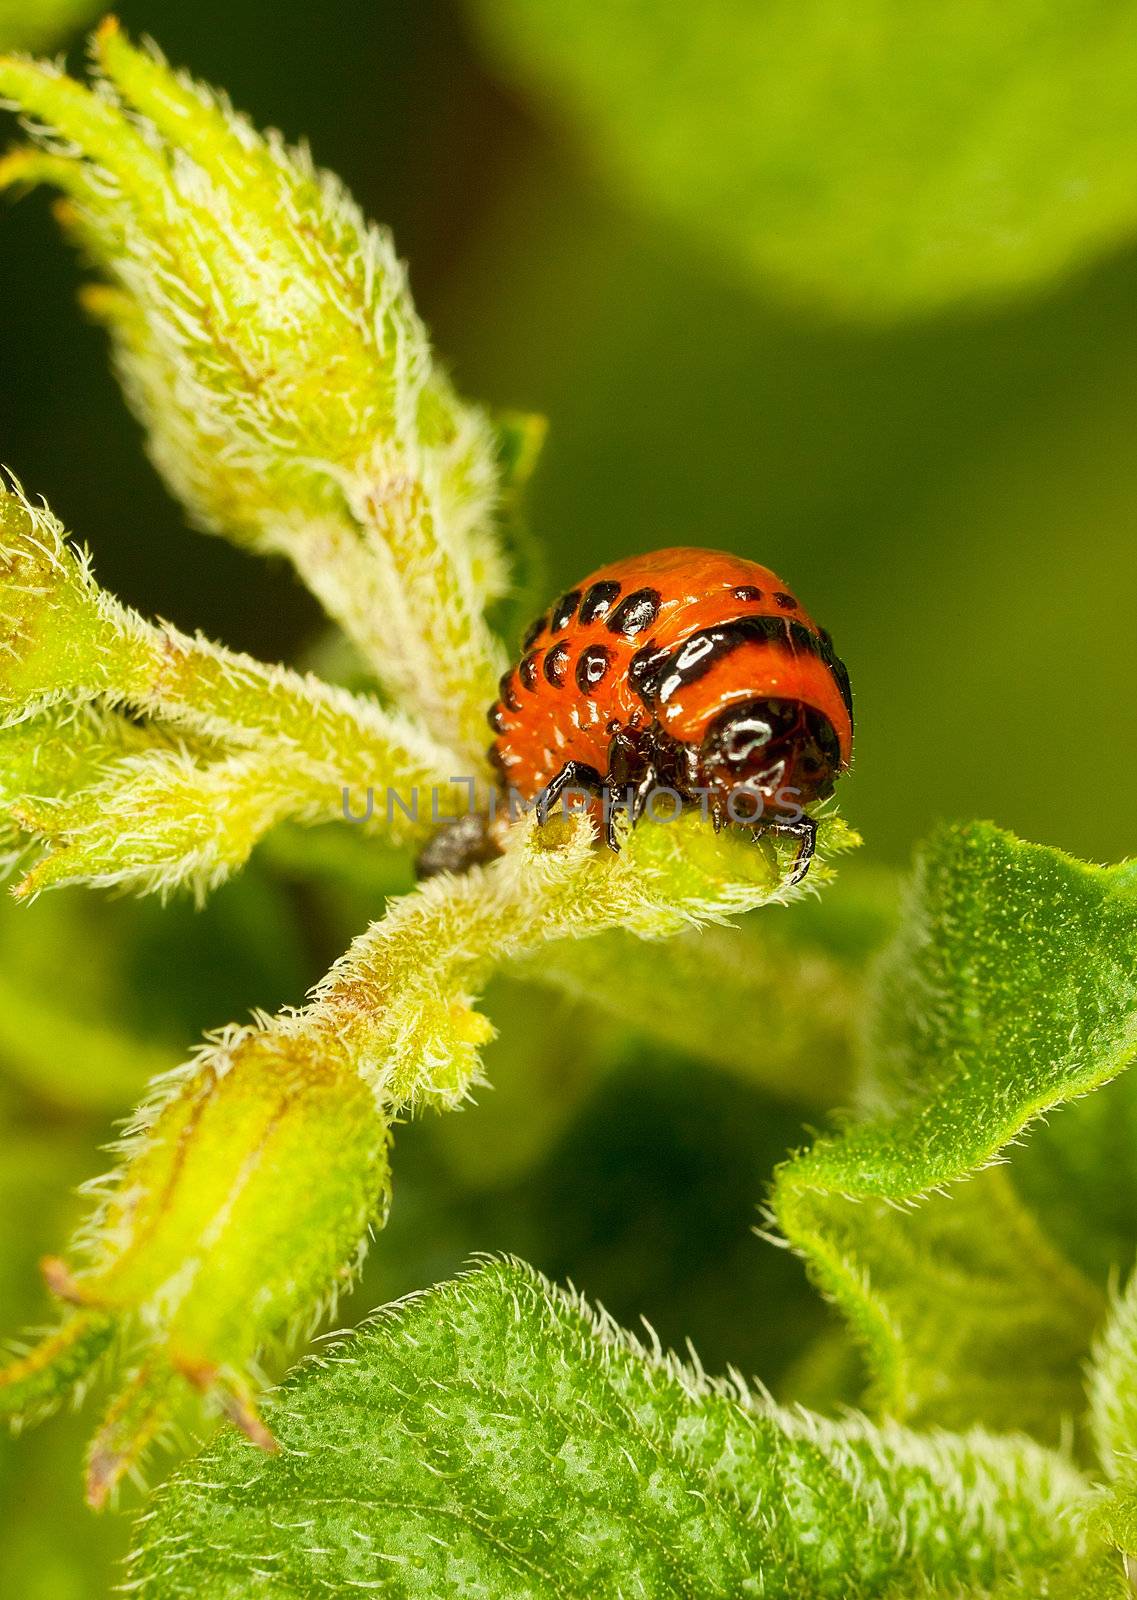 The red larva Colorado beetle eats a potato leaves.